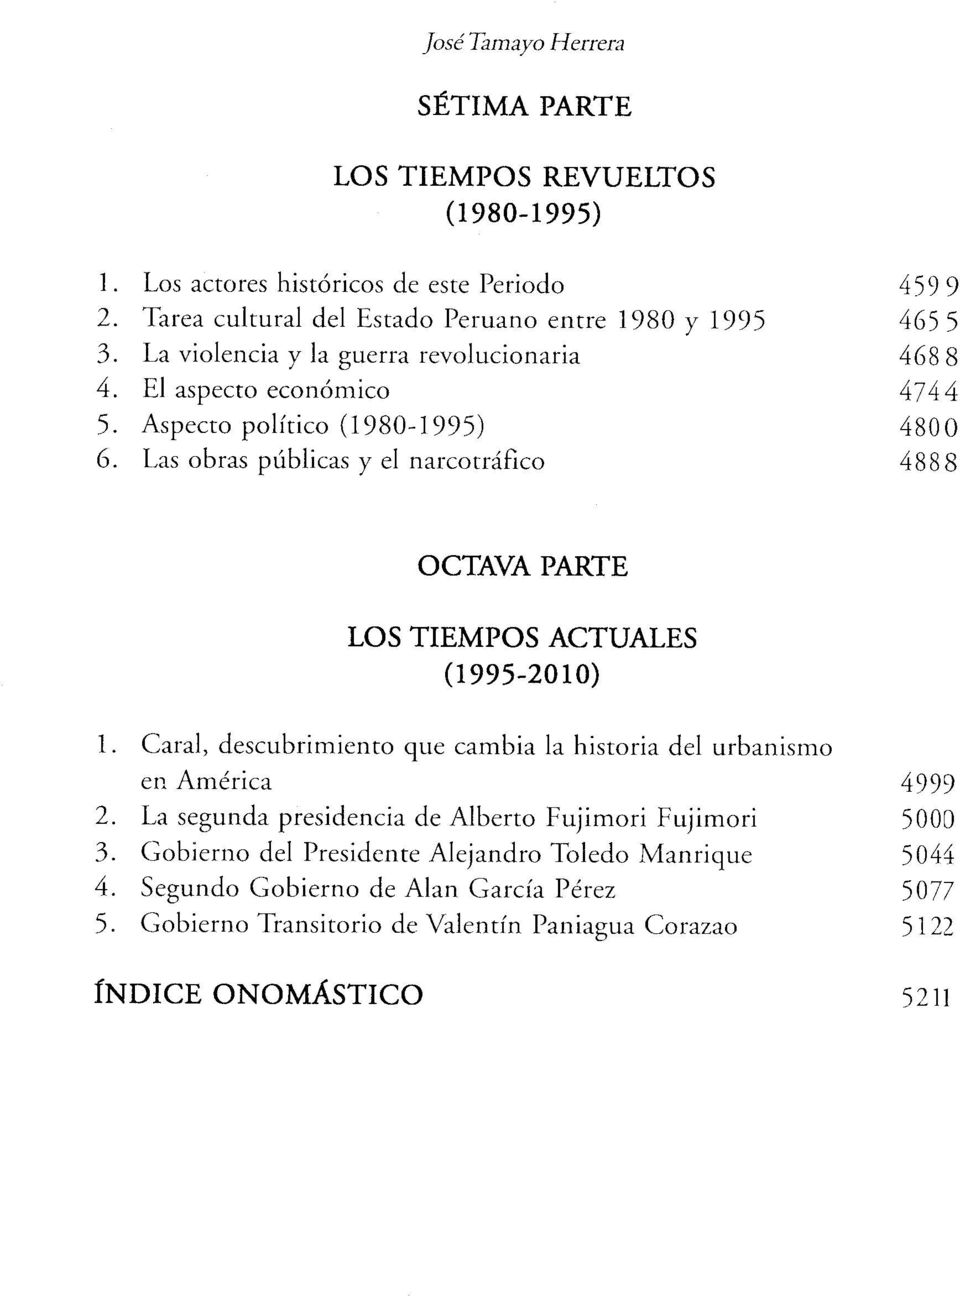 Las obras públicas y el narcotráfico 4888 OCTAVA PARTE LOS TIEMPOS ACTUALES (1995-2010) 1. Caral, descubrim iento que cam bia la historia del urbanism o en América 4999 2.